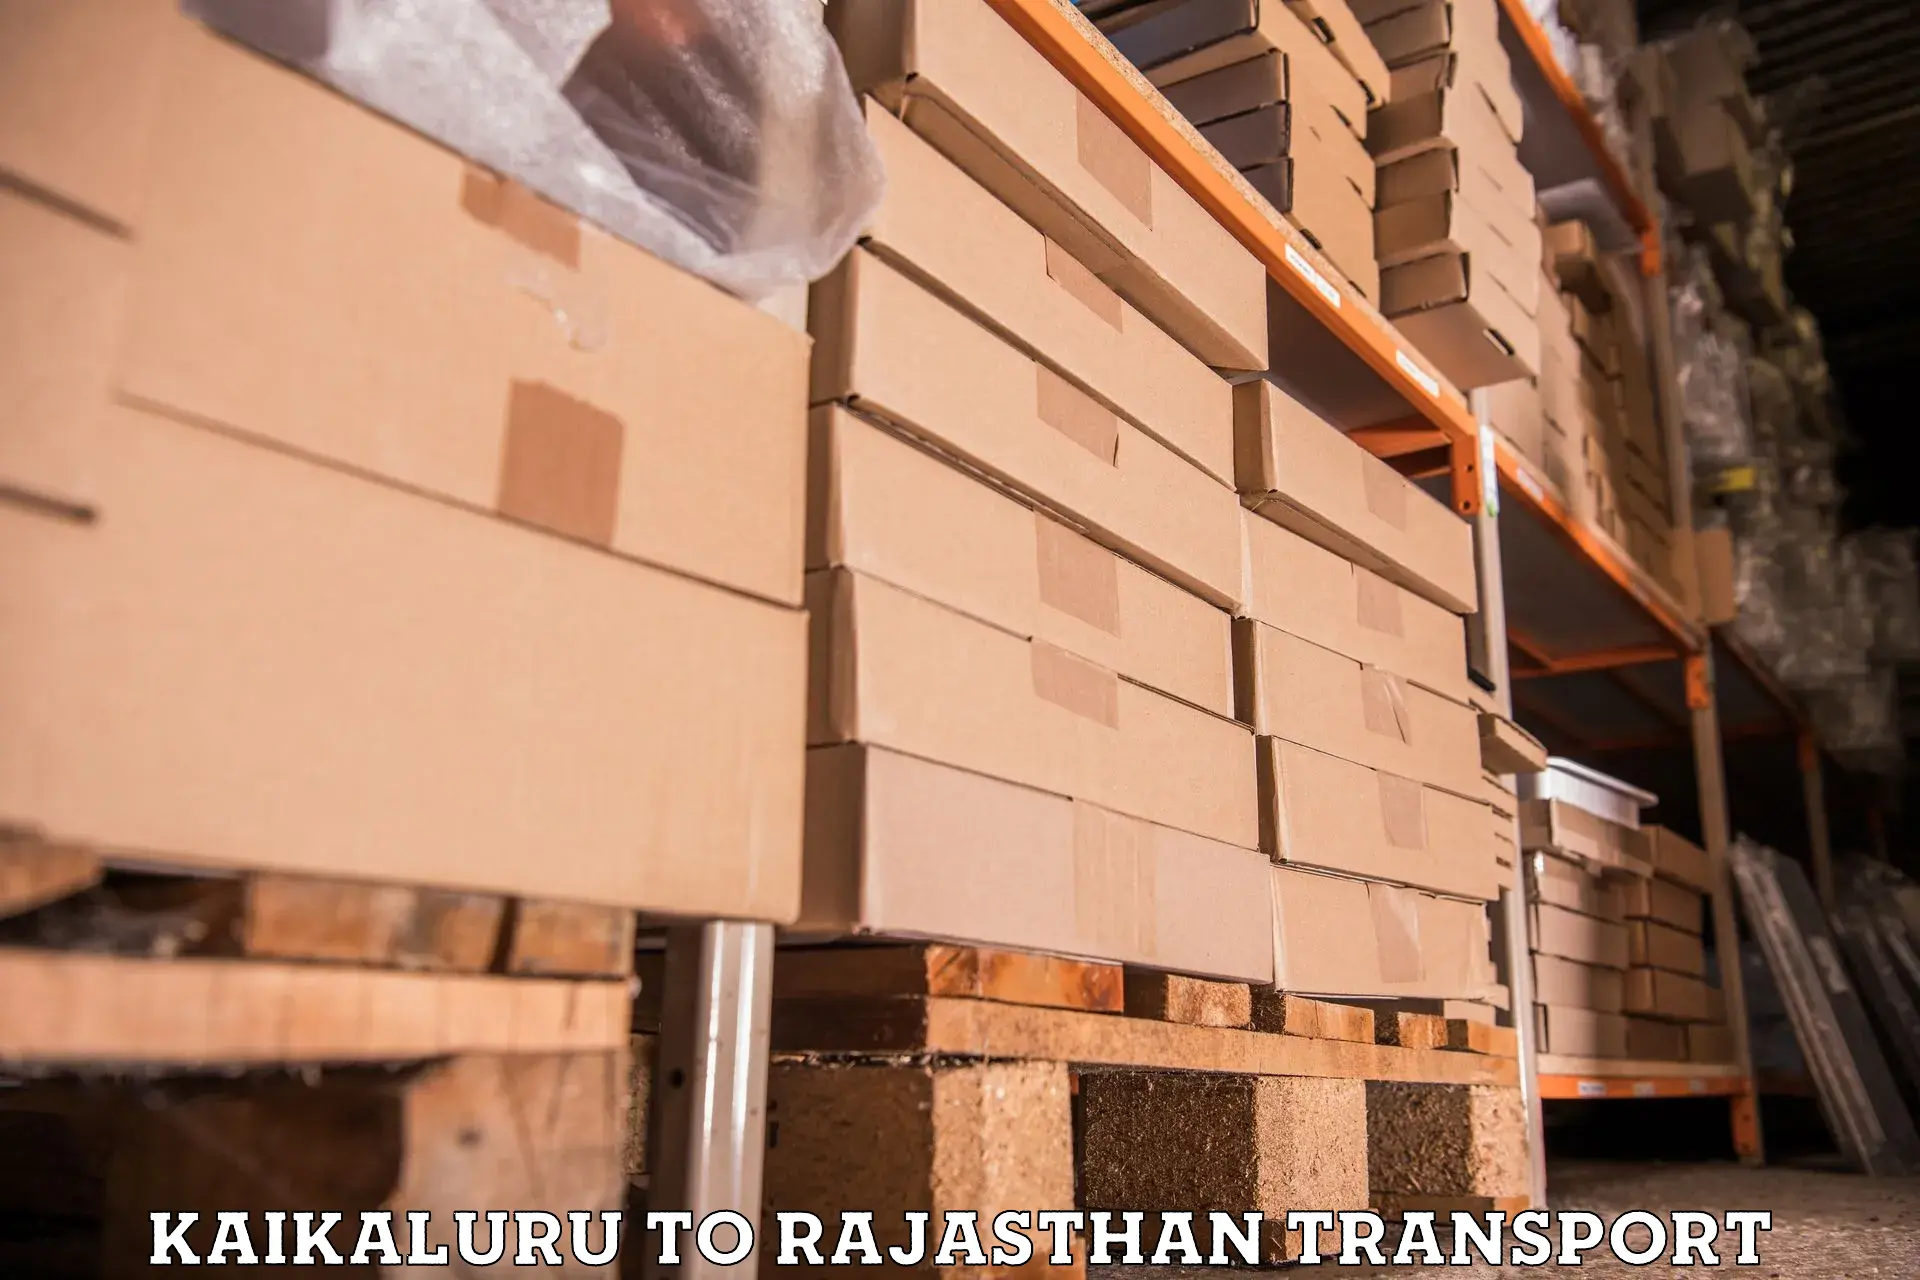 Furniture transport service Kaikaluru to Yathalakunta